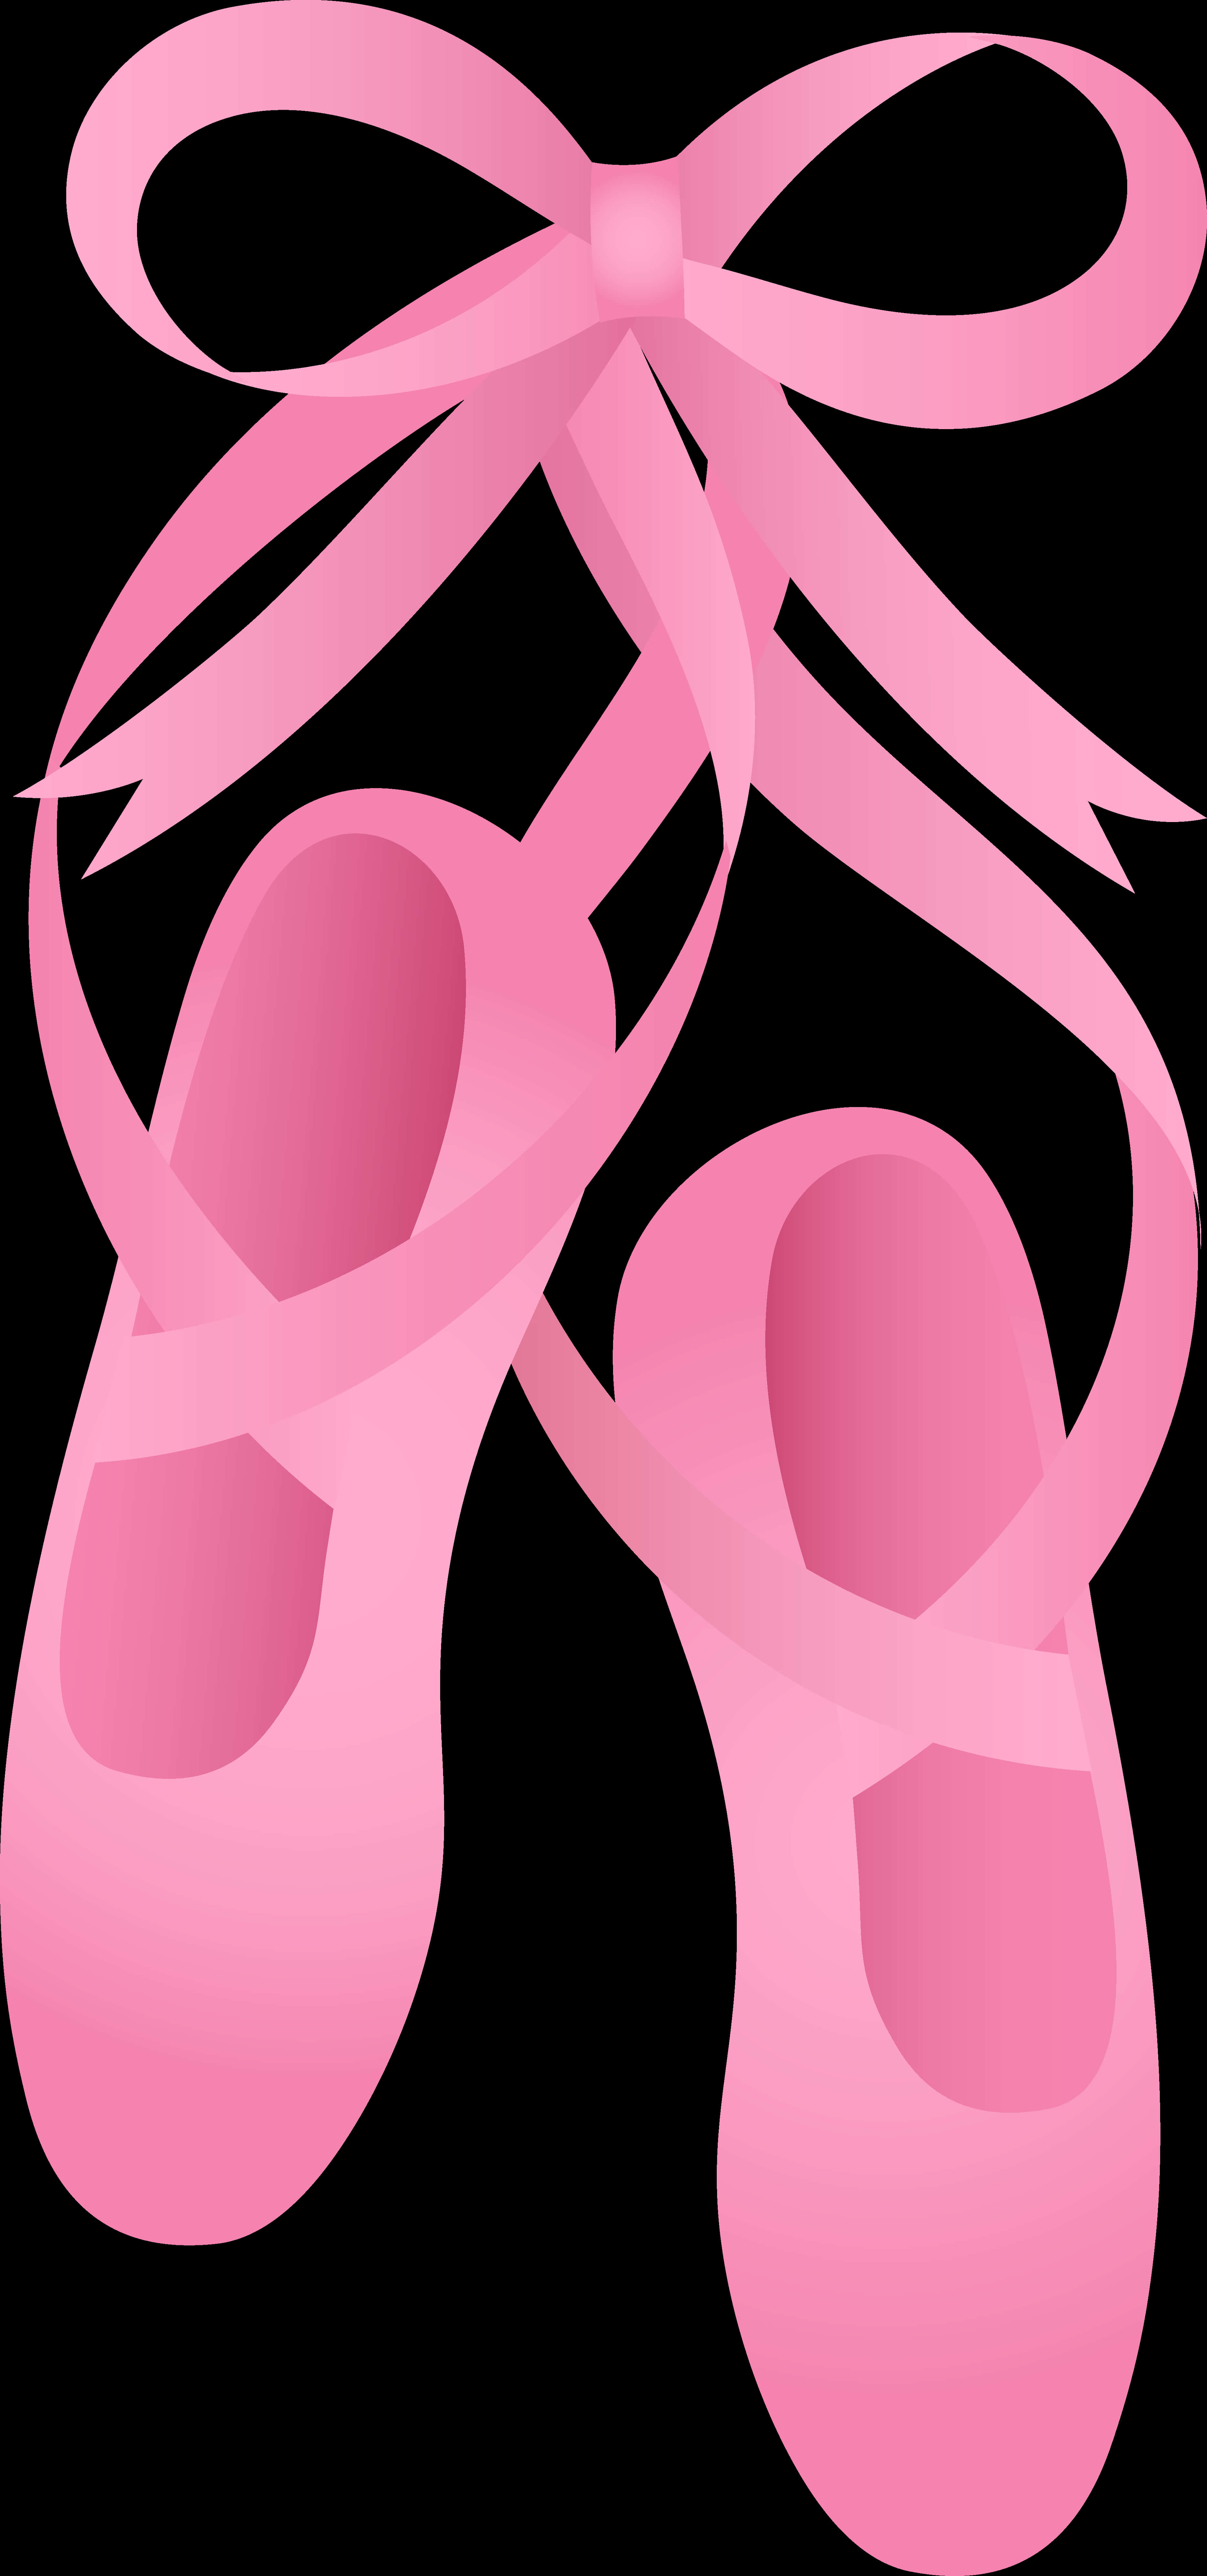 Pink Ballet Shoes Illustration PNG